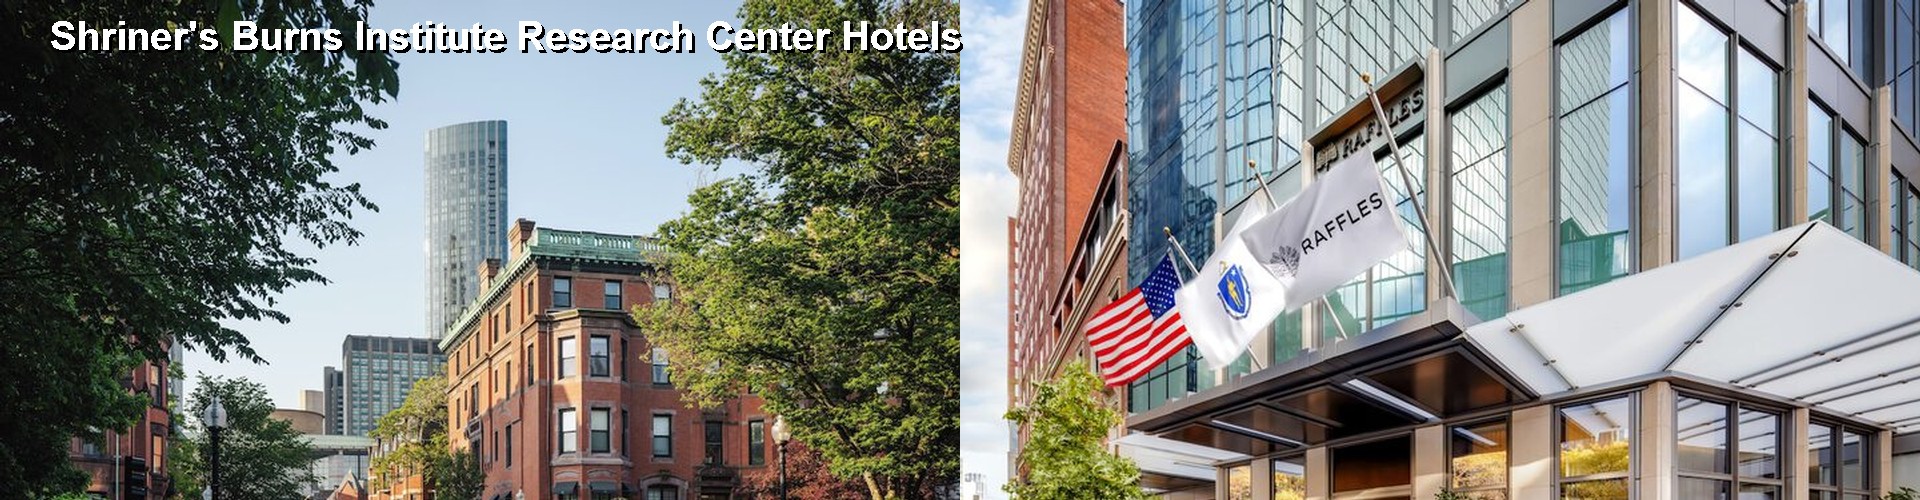 5 Best Hotels near Shriner's Burns Institute Research Center